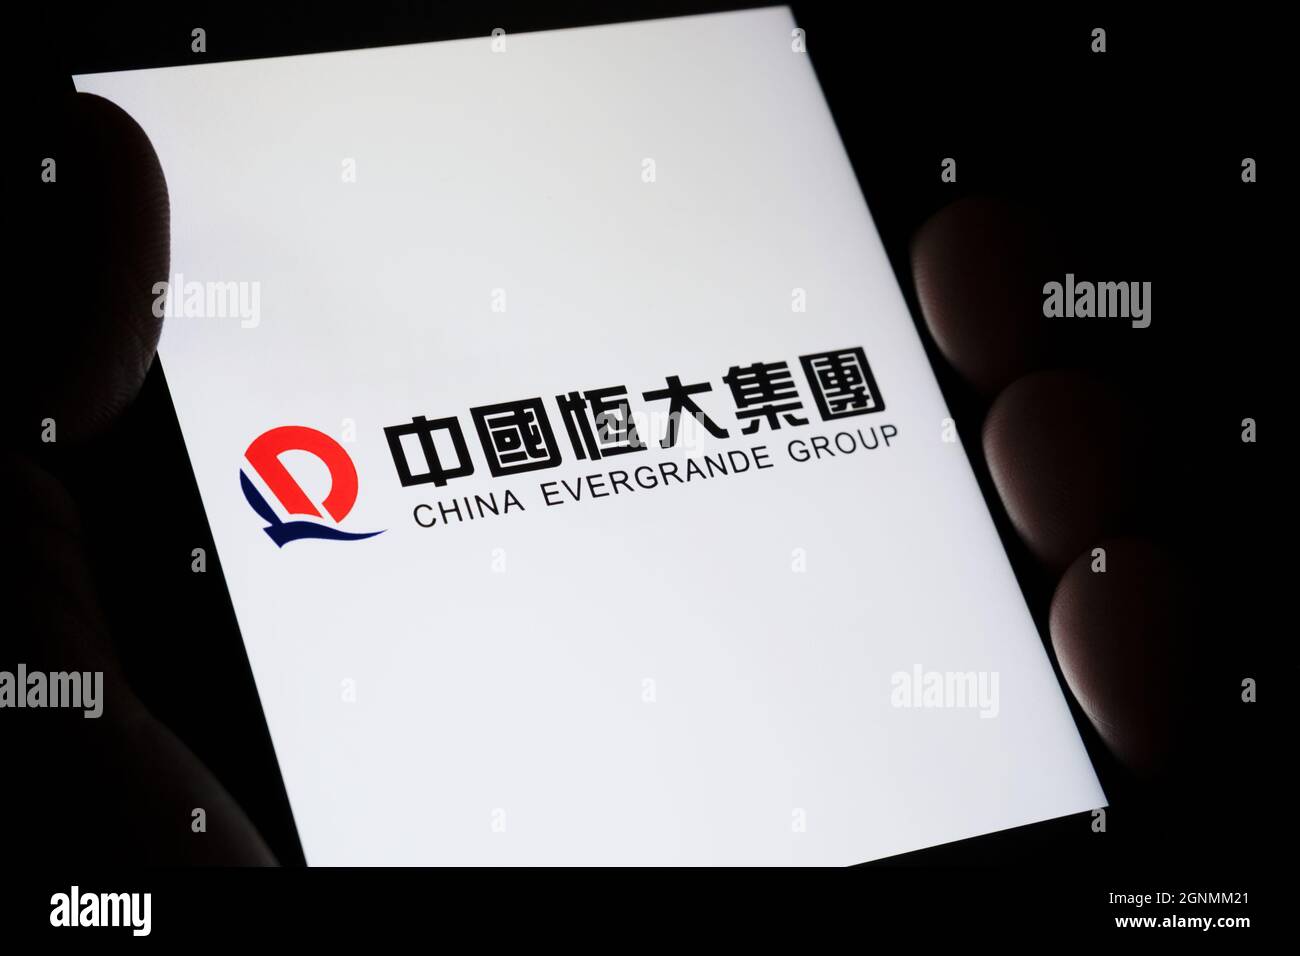 CINA EVERGRANDE GRUPPO logo con il suo nome in cinese visto su smartphone tenere in mano in una stanza buia. Concetto. Messa a fuoco selettiva. Stafford, Regno Unito Foto Stock